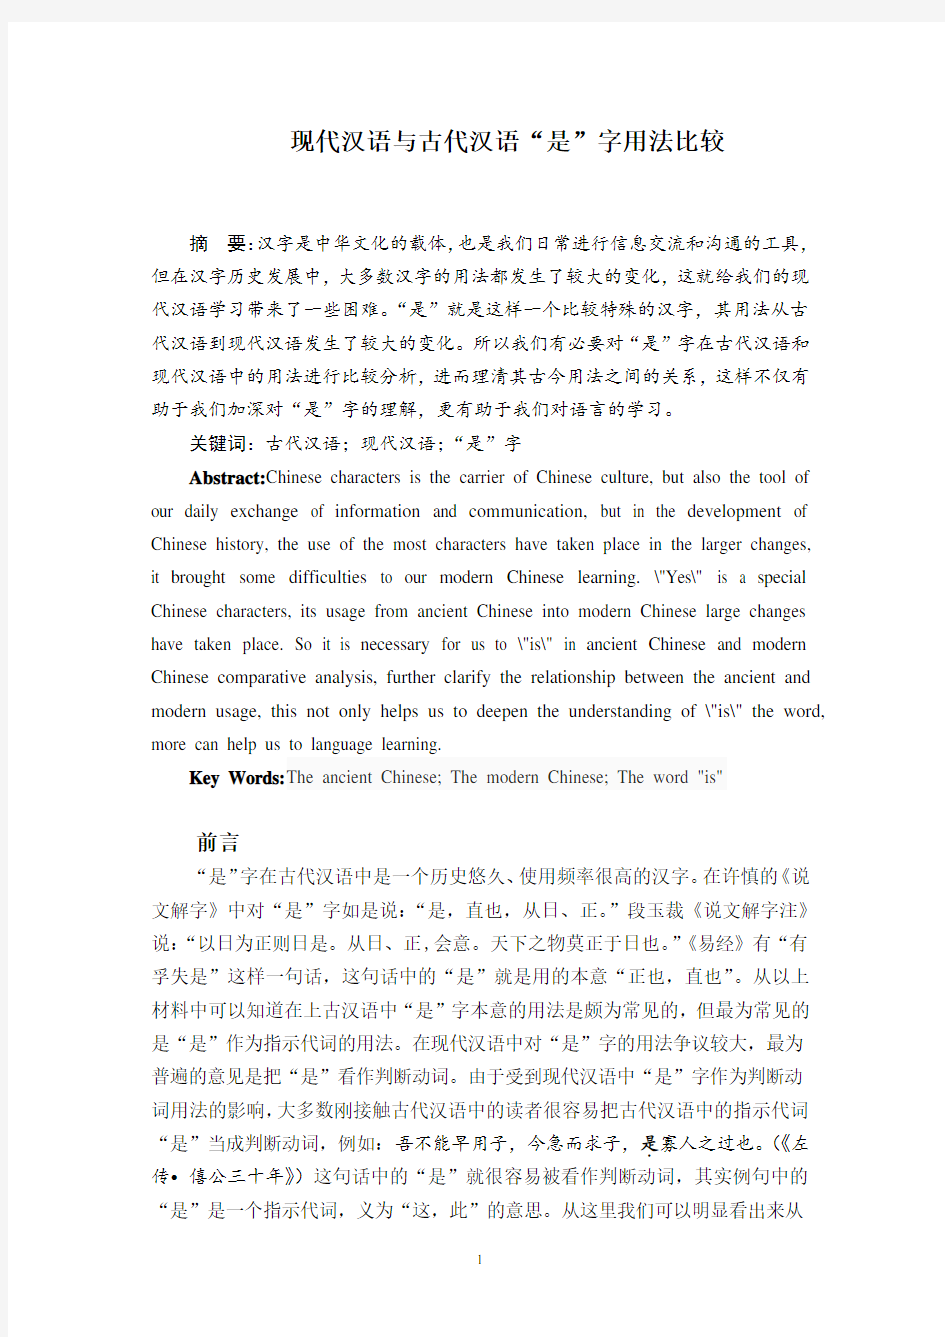 现代汉语与古代汉语“是”字用法比较